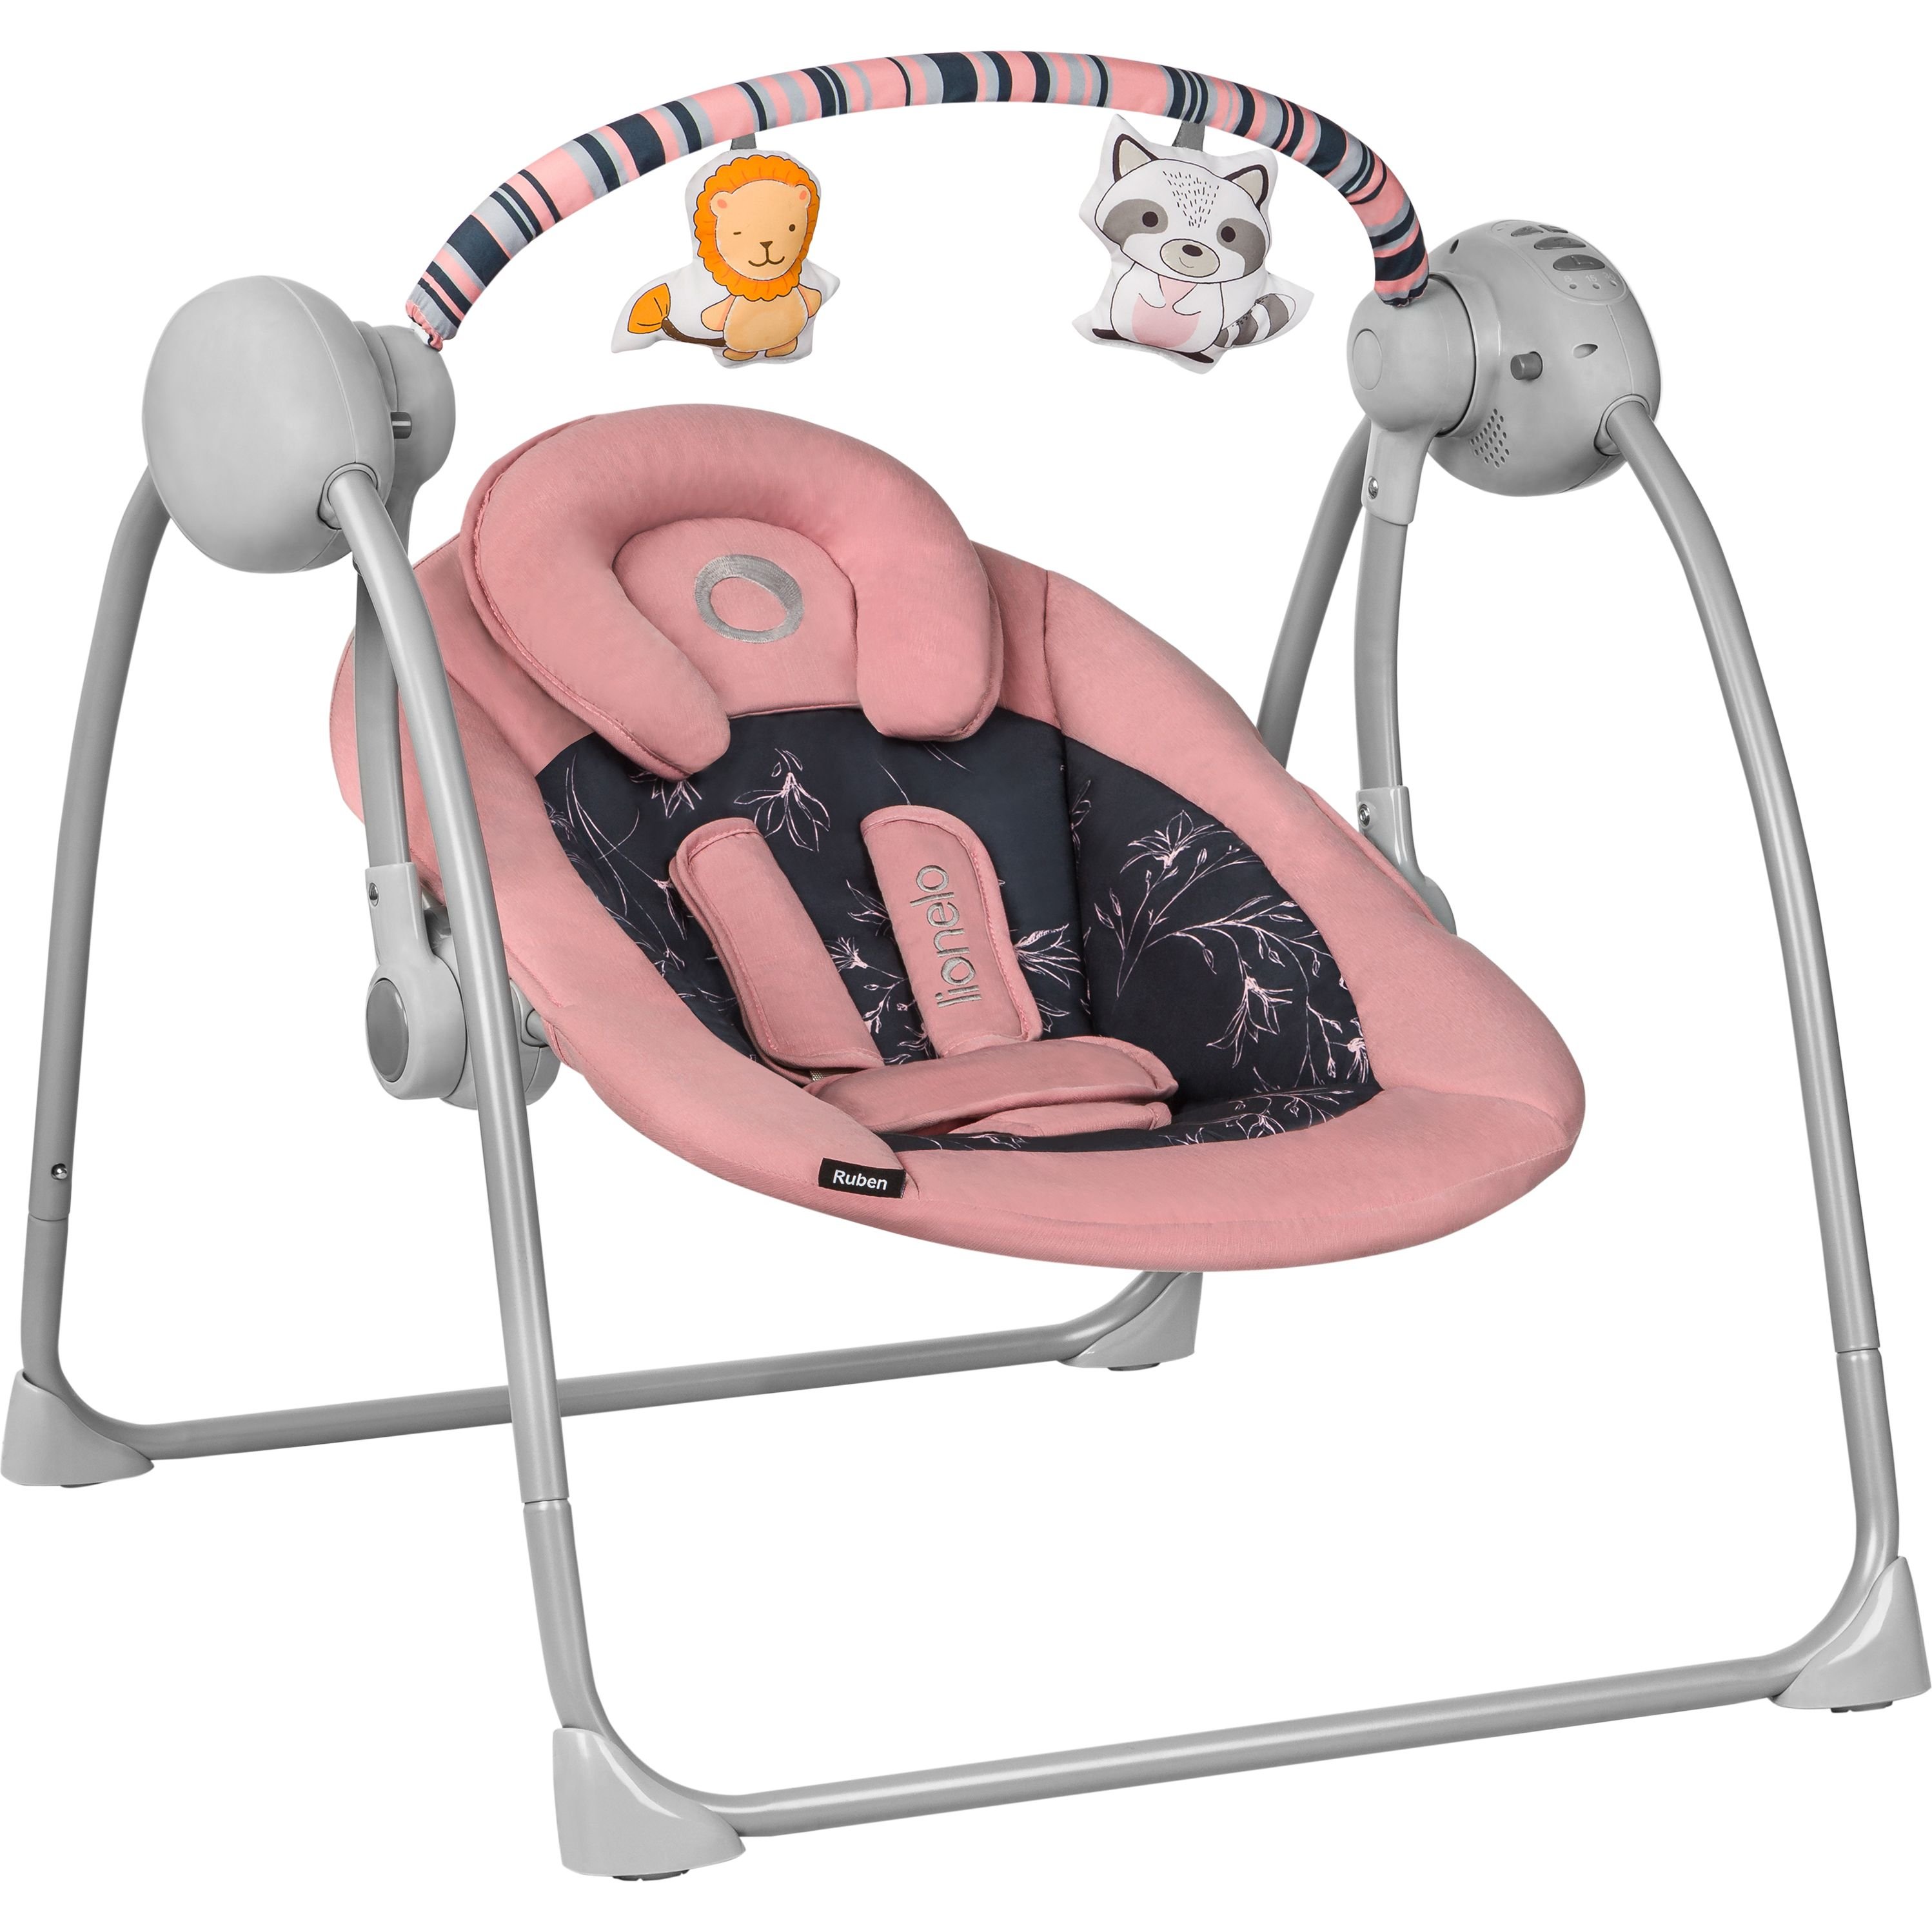 Кресло-качалка Lionelo Ruben Pink Baby с игровой дугой, розовое (LO-RUBEN RUBEN PINK BABY) - фото 2